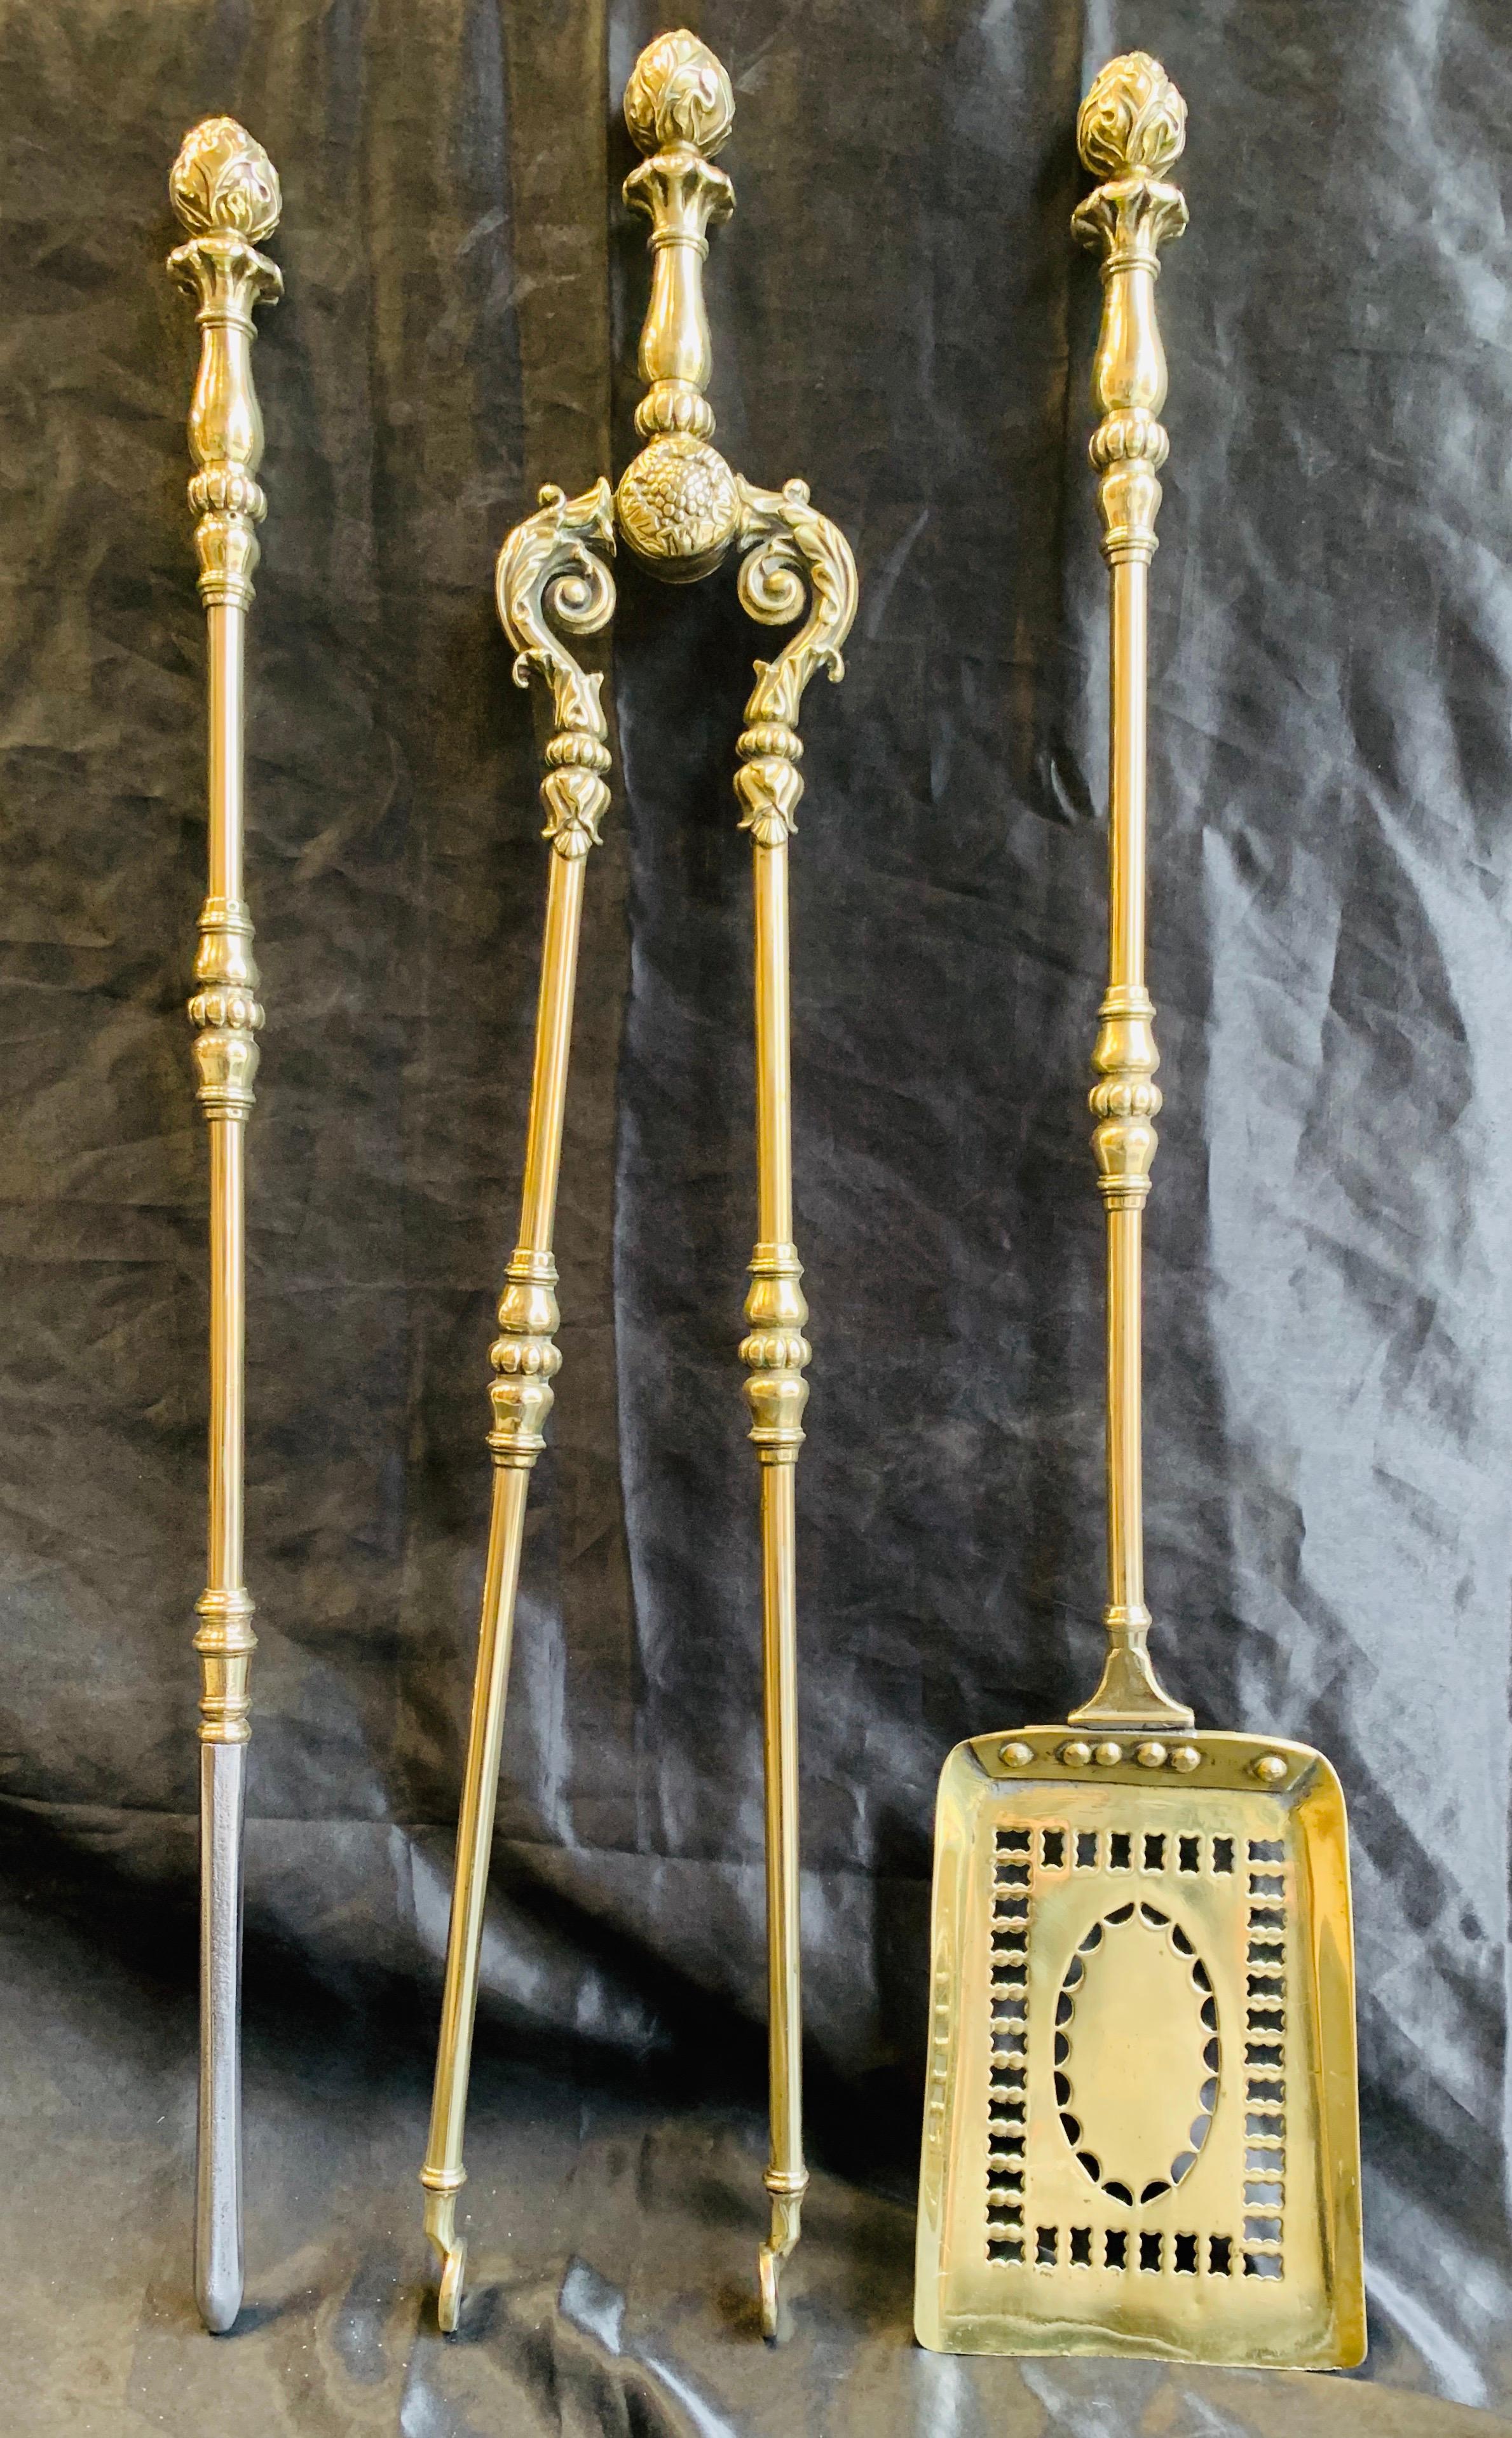 Ensemble orné d'outils à feu en laiton poli du milieu de l'époque victorienne du 19e siècle, comprenant un tisonnier avec une extrémité en acier, une pelle percée et une paire de pinces, le tout coiffé d'un bouton de gland.

Origine britannique,